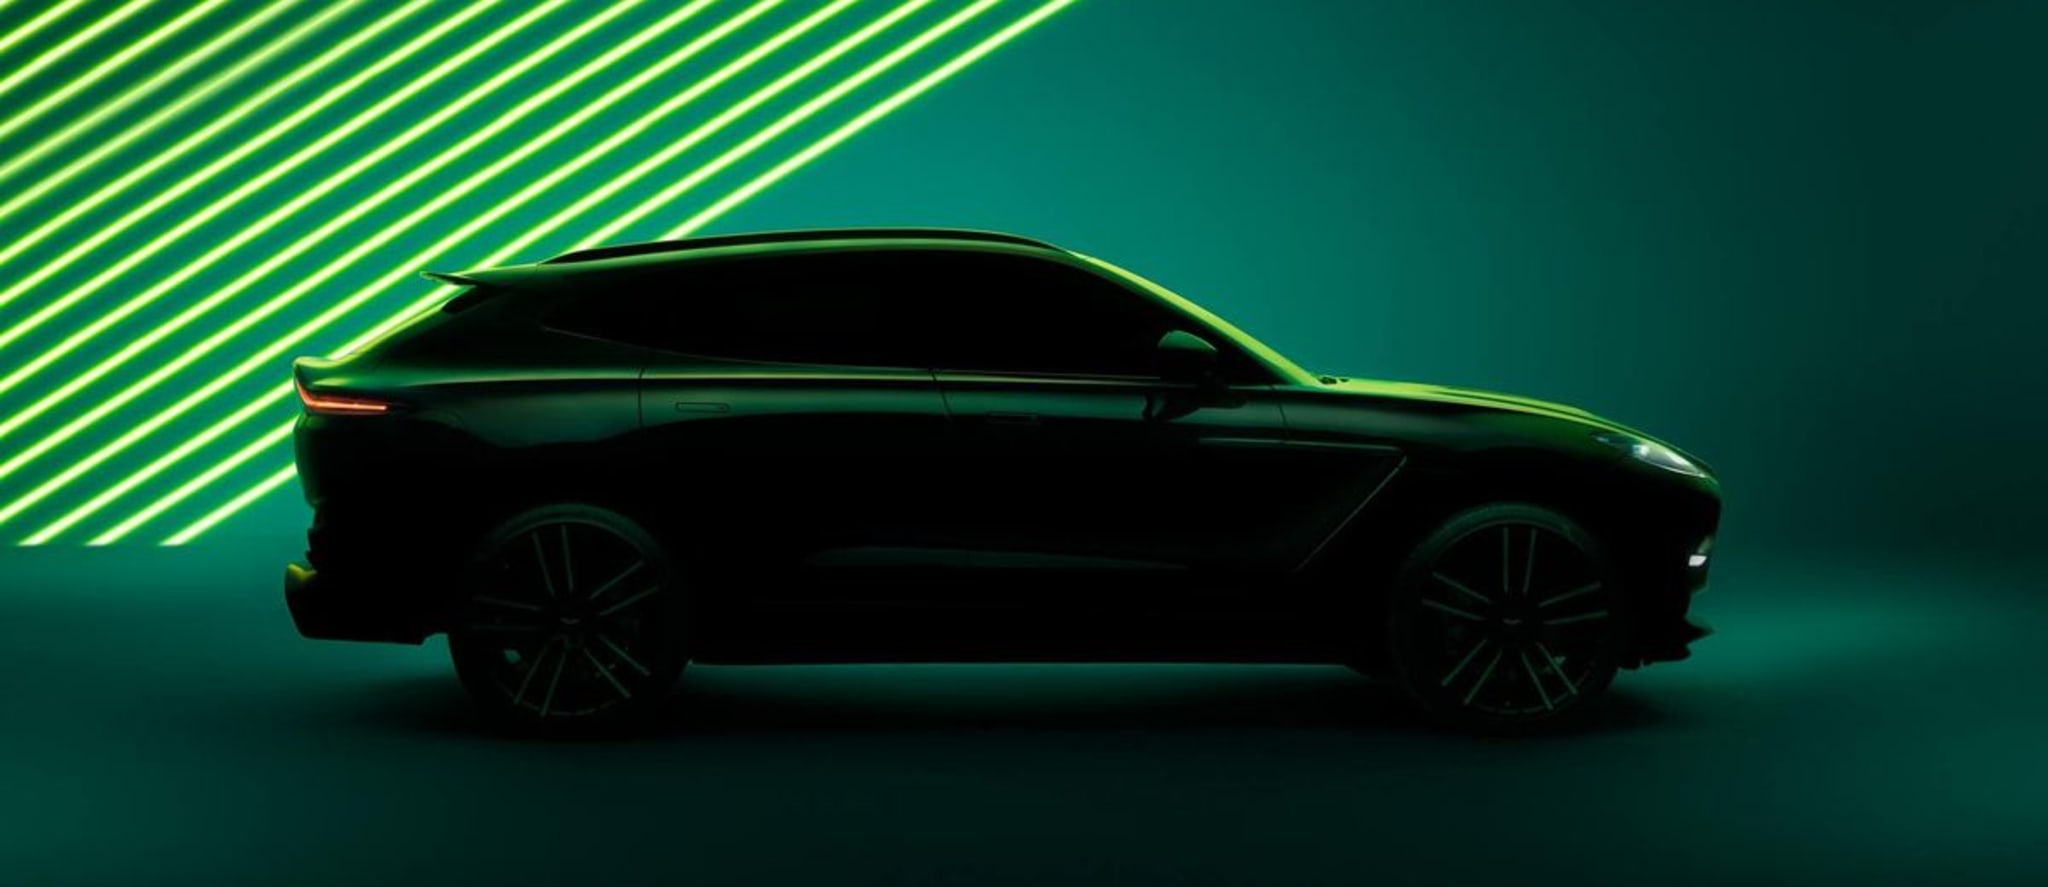 阿斯顿马丁即将推出的高性能 DBX SUV 的预告图揭示了一种激进的新面貌